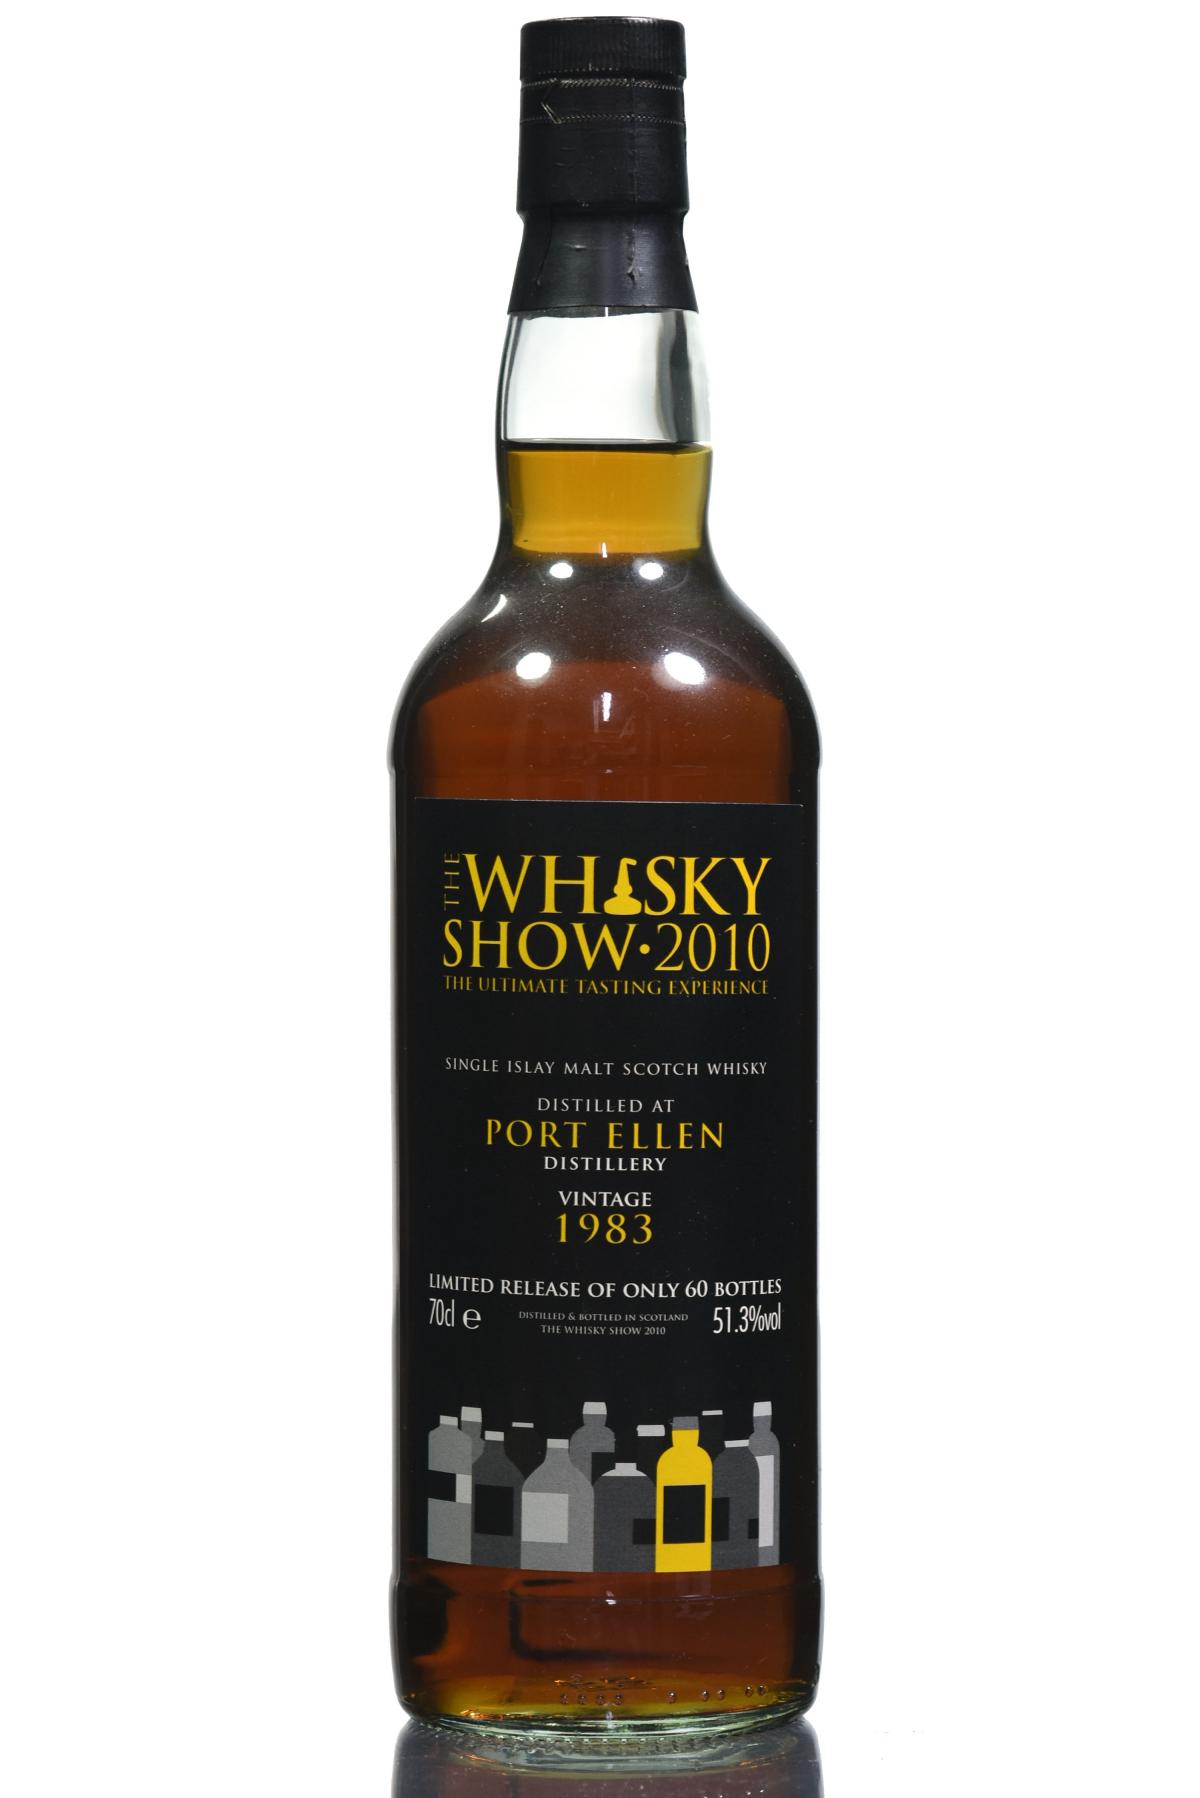 Port Ellen 1983 - The Whisky Show 2010 - 60 Bottles